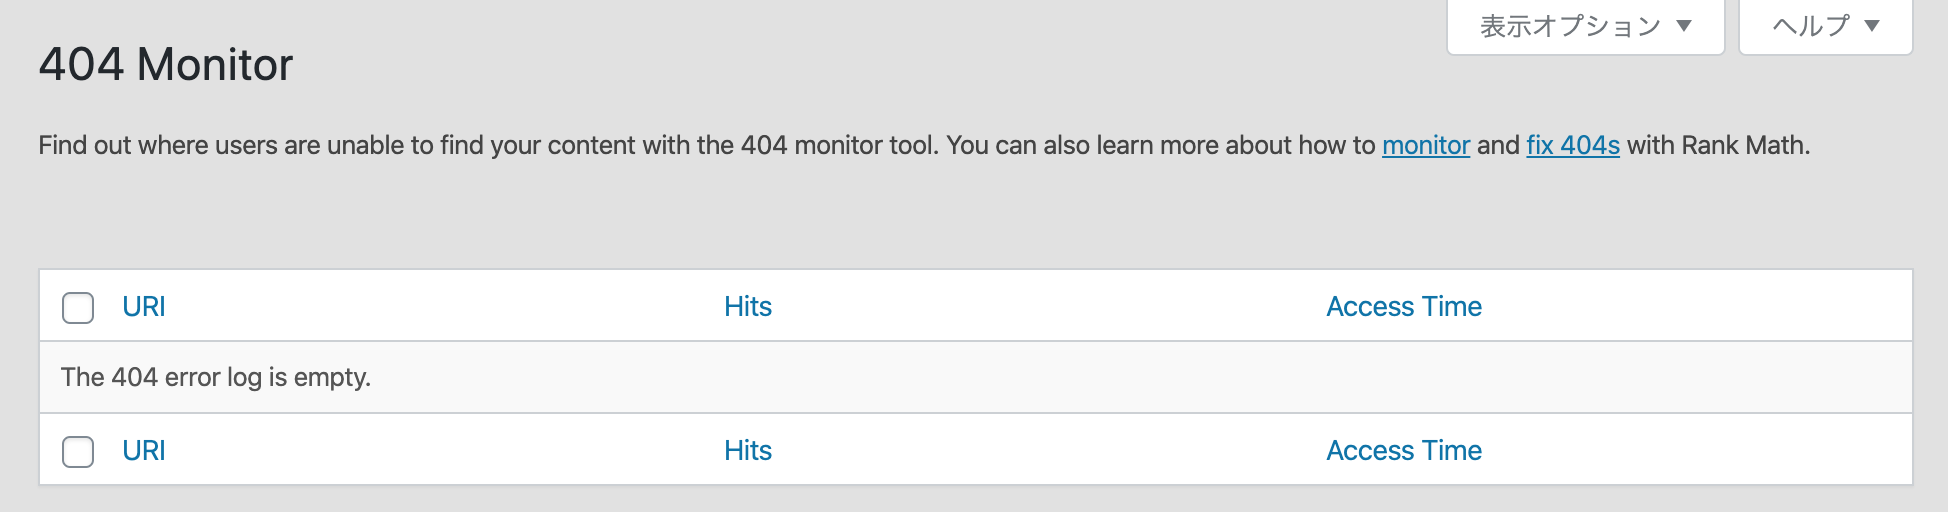 Rank Math 404 Monitor